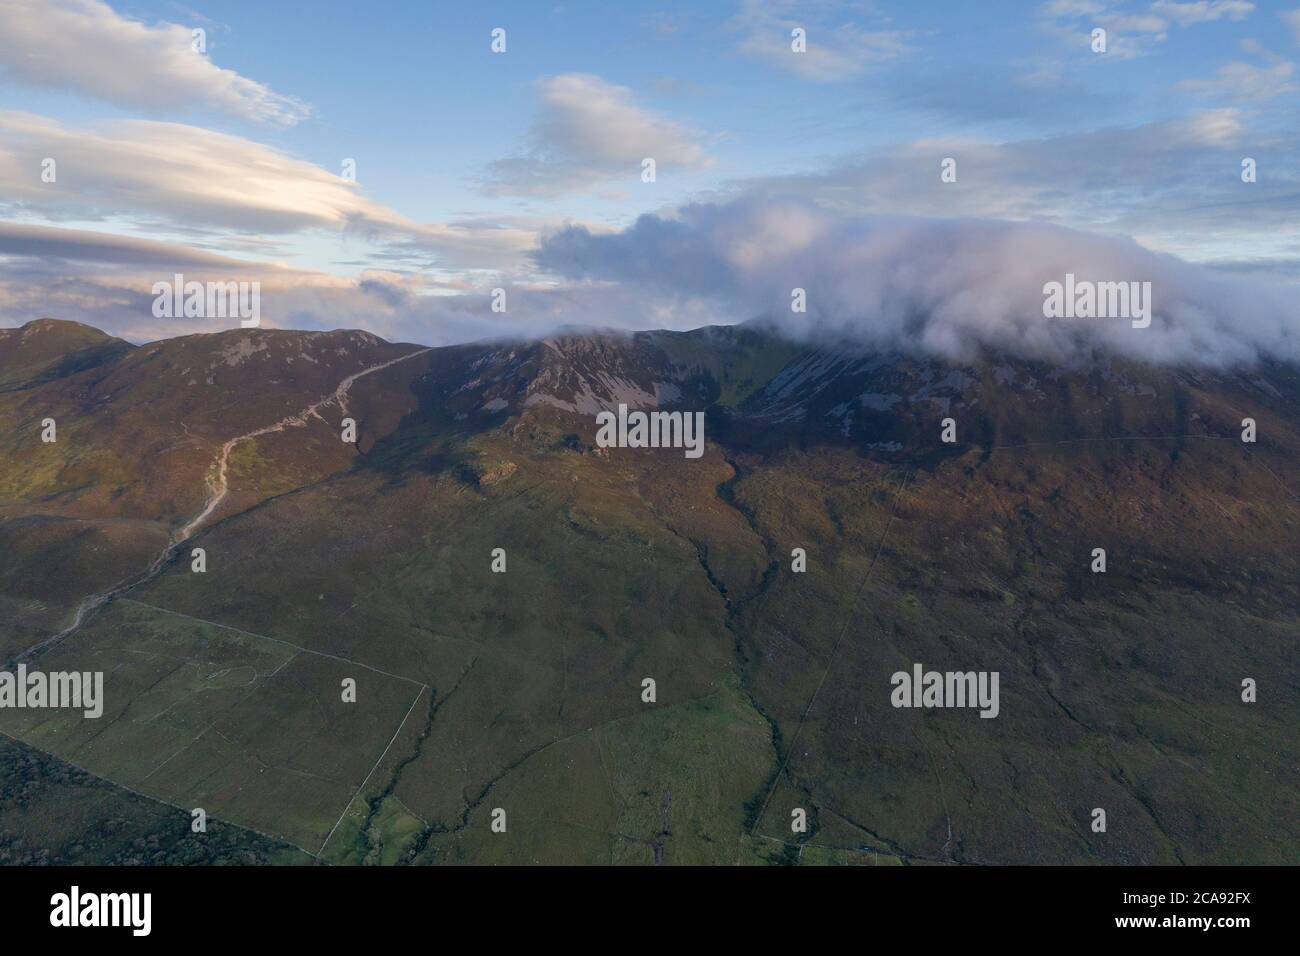 Image panoramique de drone aérien de Croagh Patrick, comté de Mayo, Irlande Banque D'Images